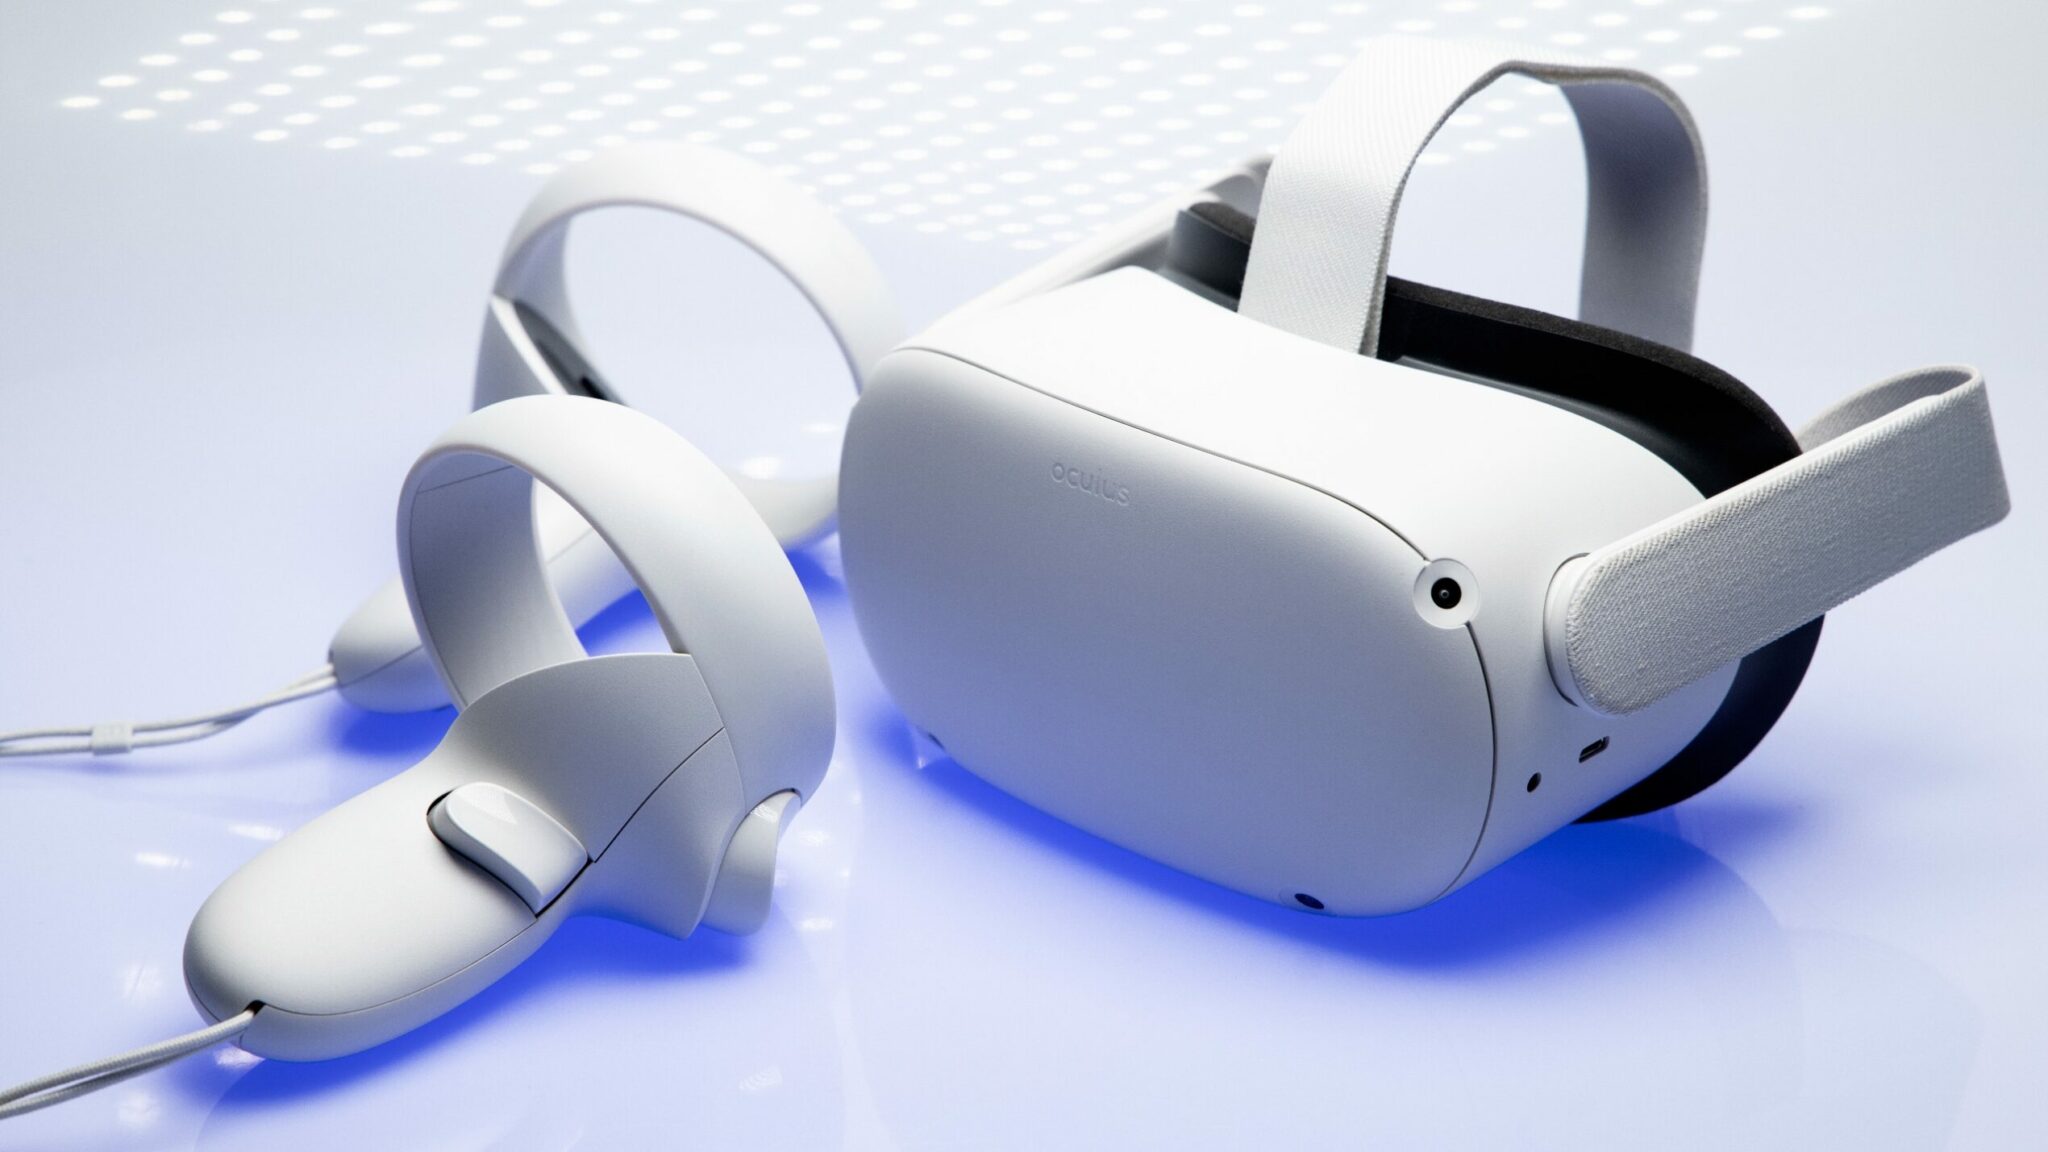 تخفيضات كبيرة على نظارات الواقع الافتراضي Quest 2 من ميتا